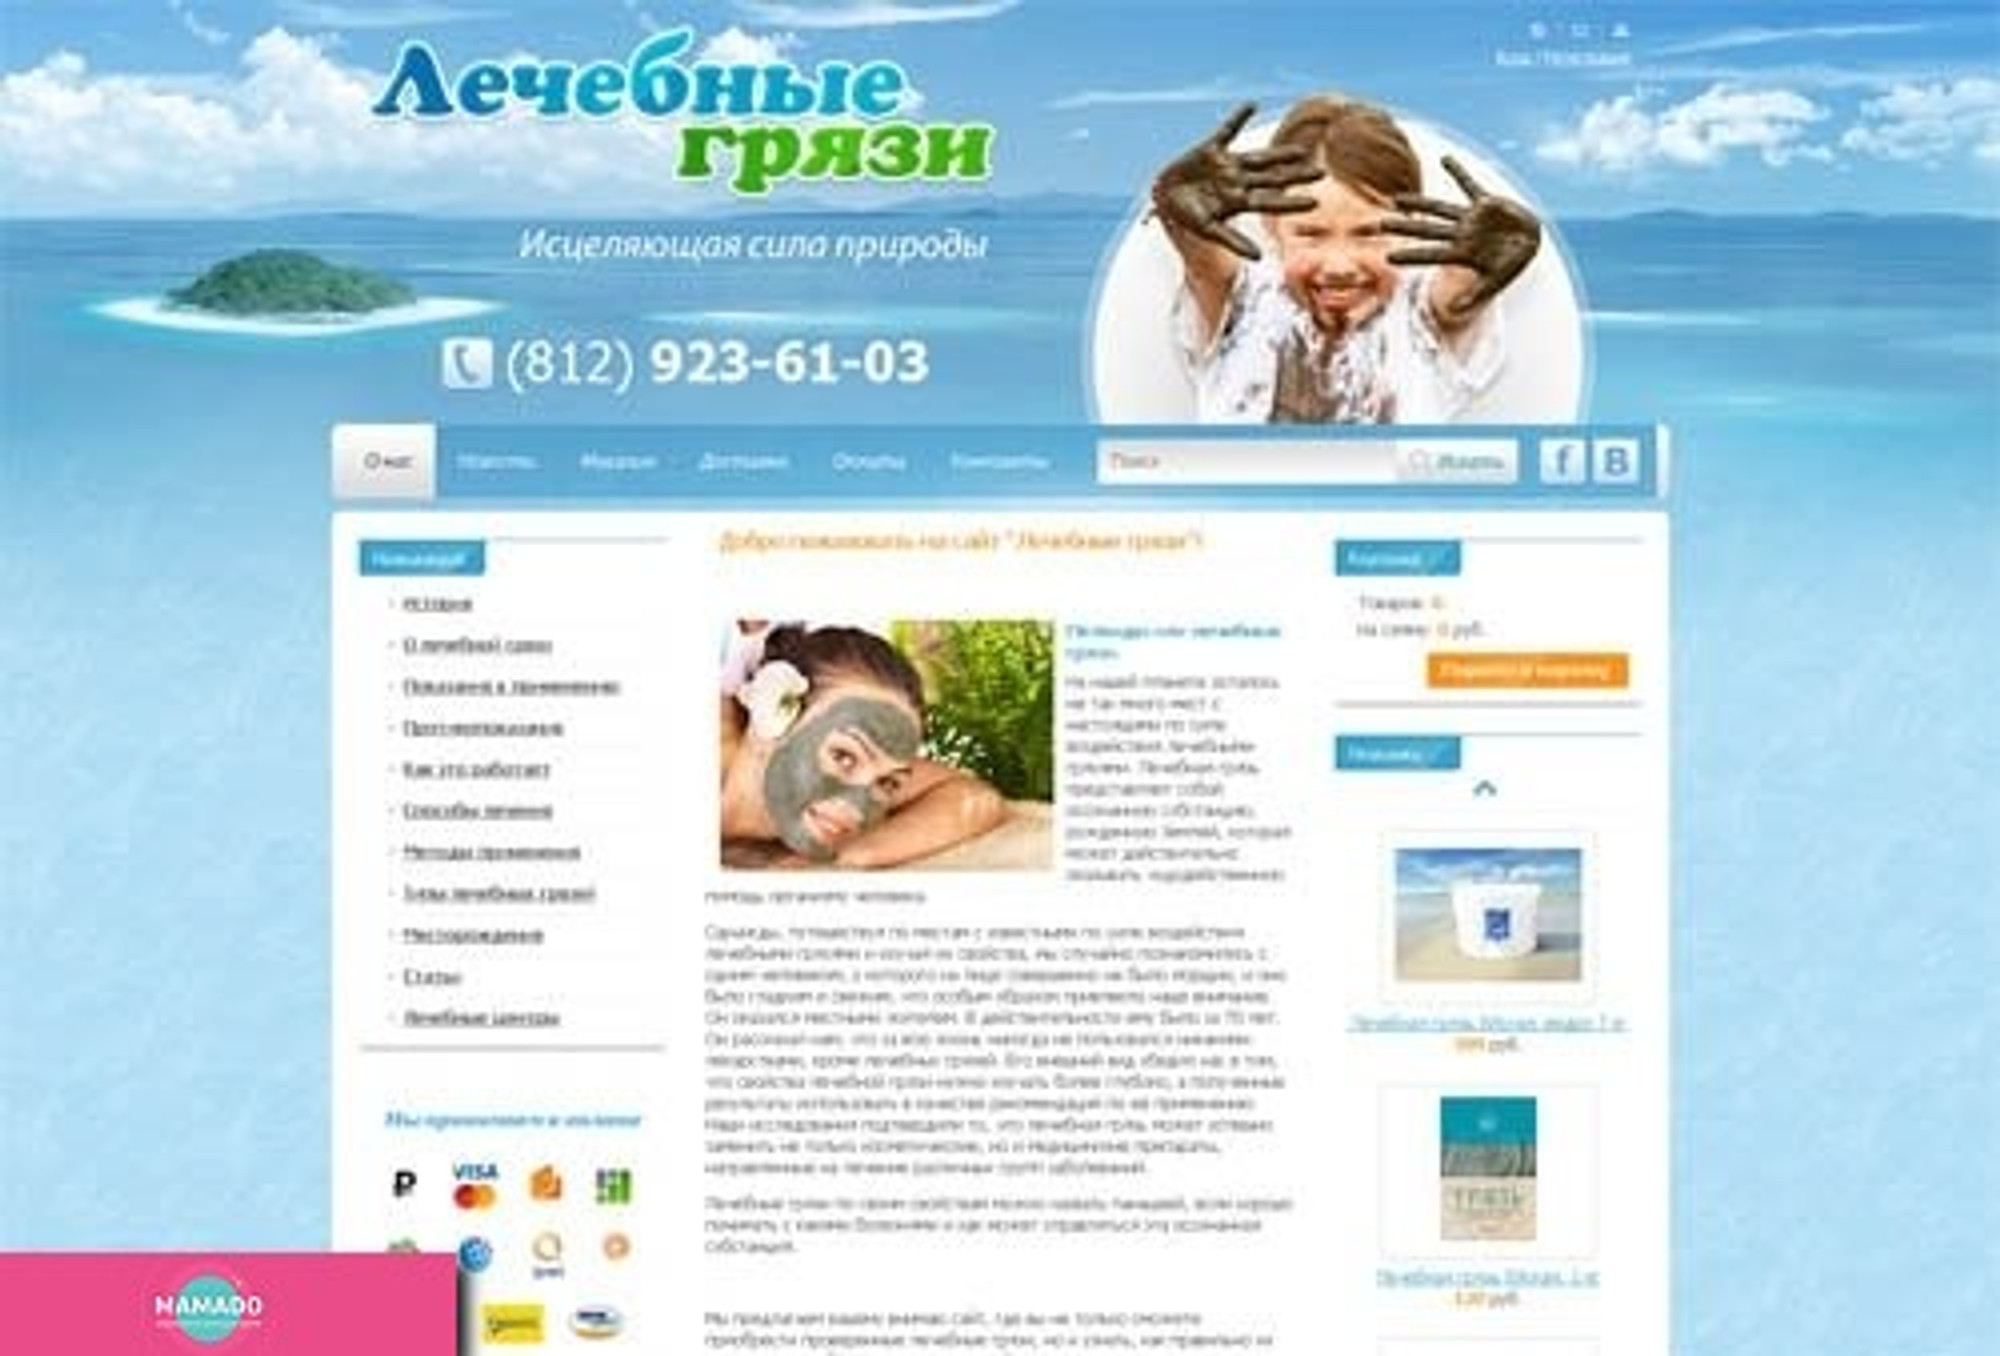 "Лечебные грязи", интернет-магазин лечебной грязи для детей и взрослых, СПб 